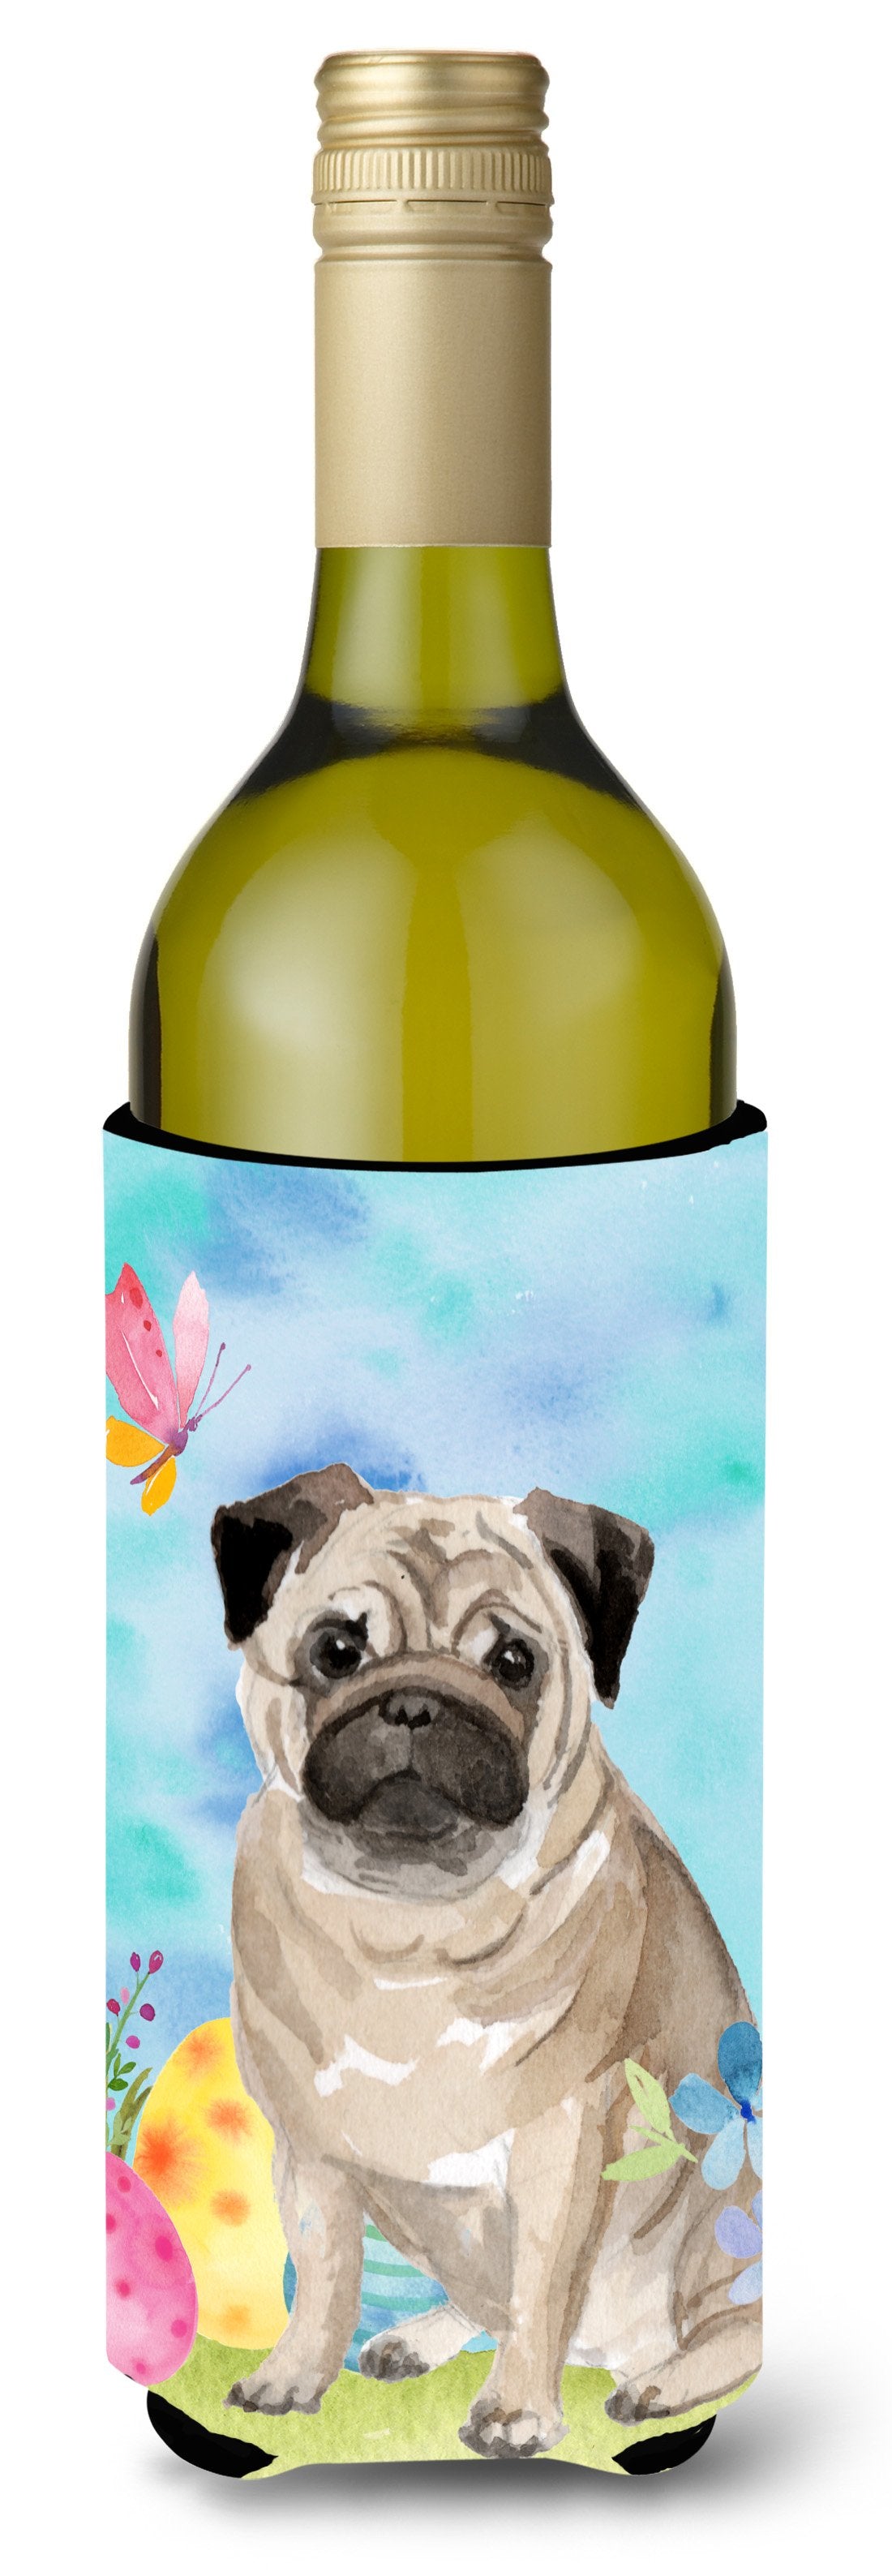 Fawn Pug Easter Wine Bottle Beverge Insulator Hugger BB9635LITERK by Caroline's Treasures